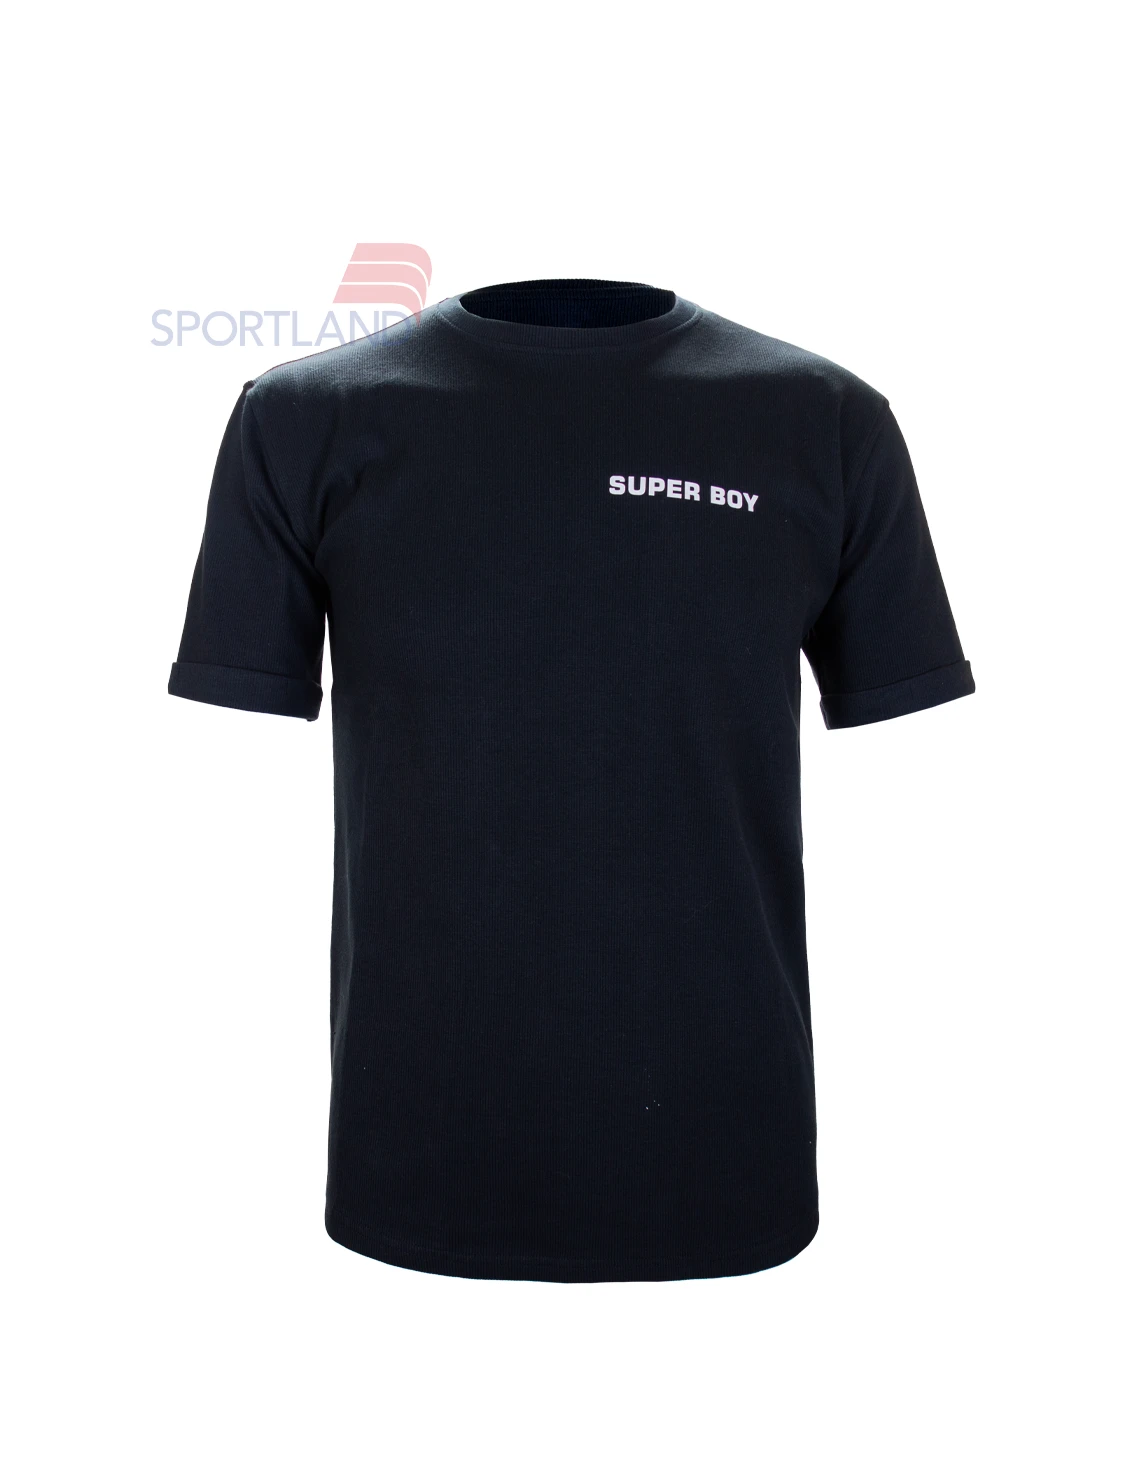 تی شرت ورزشی مردانه اسپورتلند Romey M